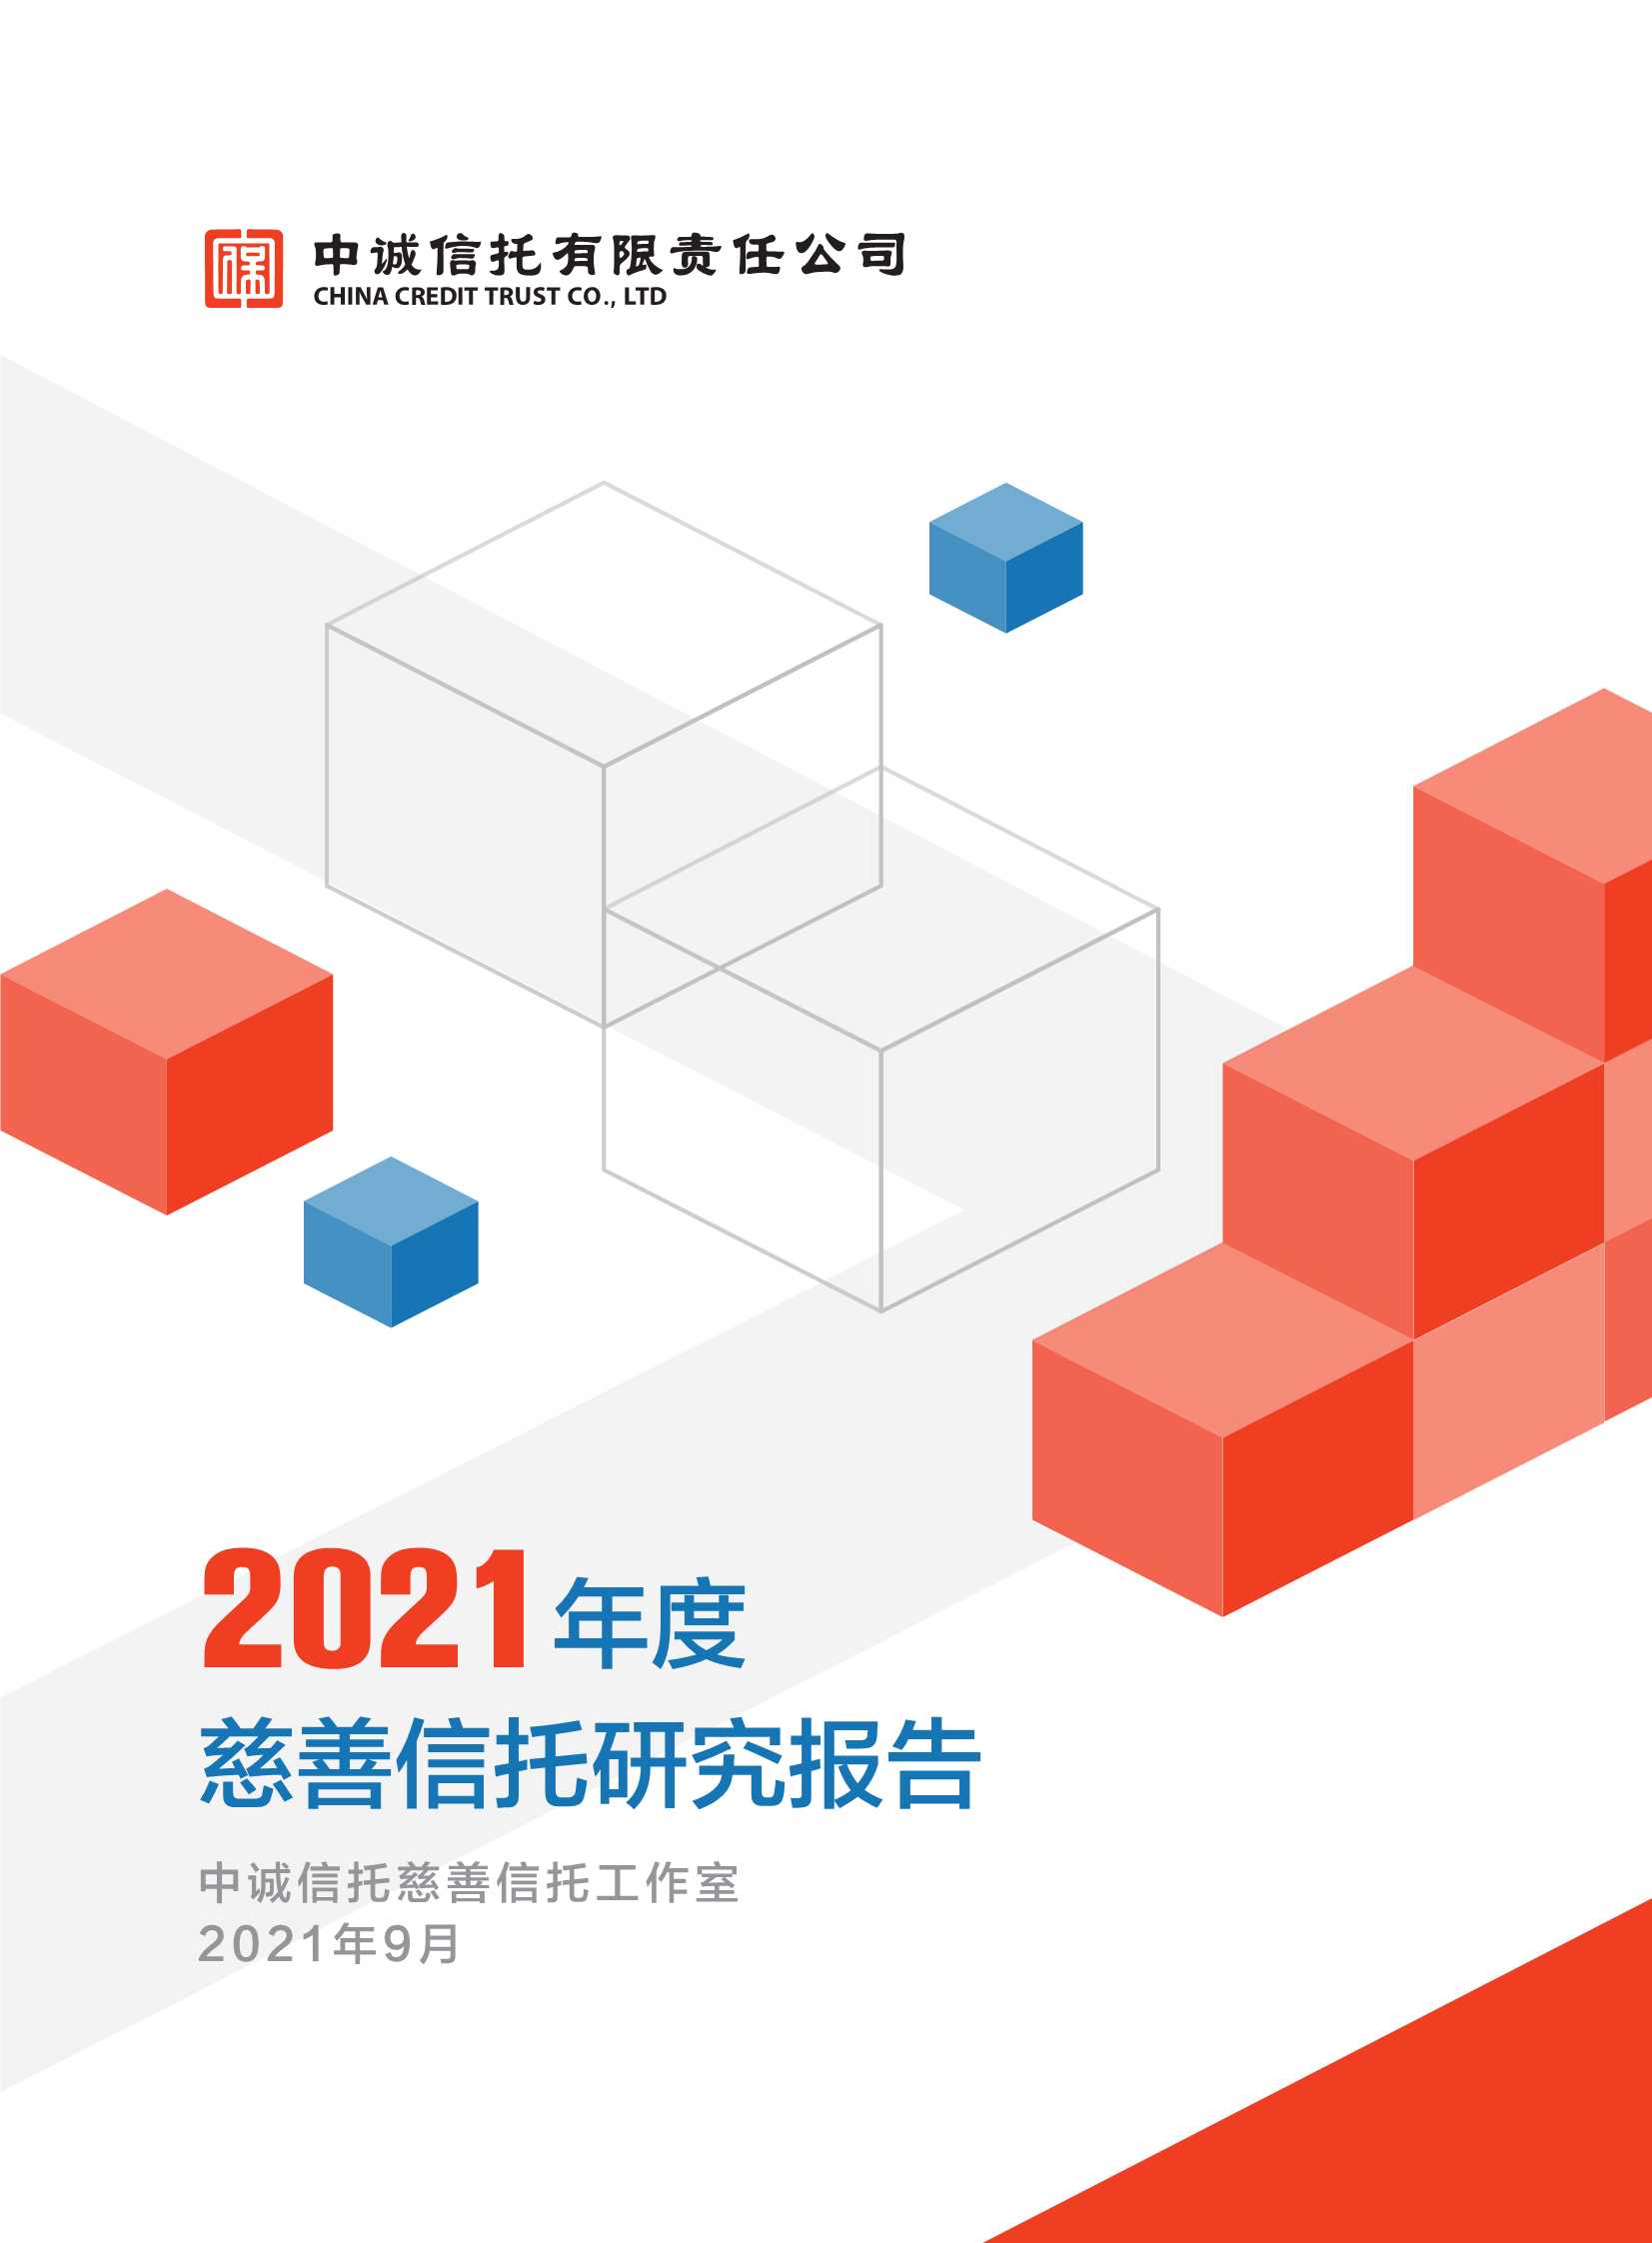 2021年度慈善信托研究报告-2021.09-47页